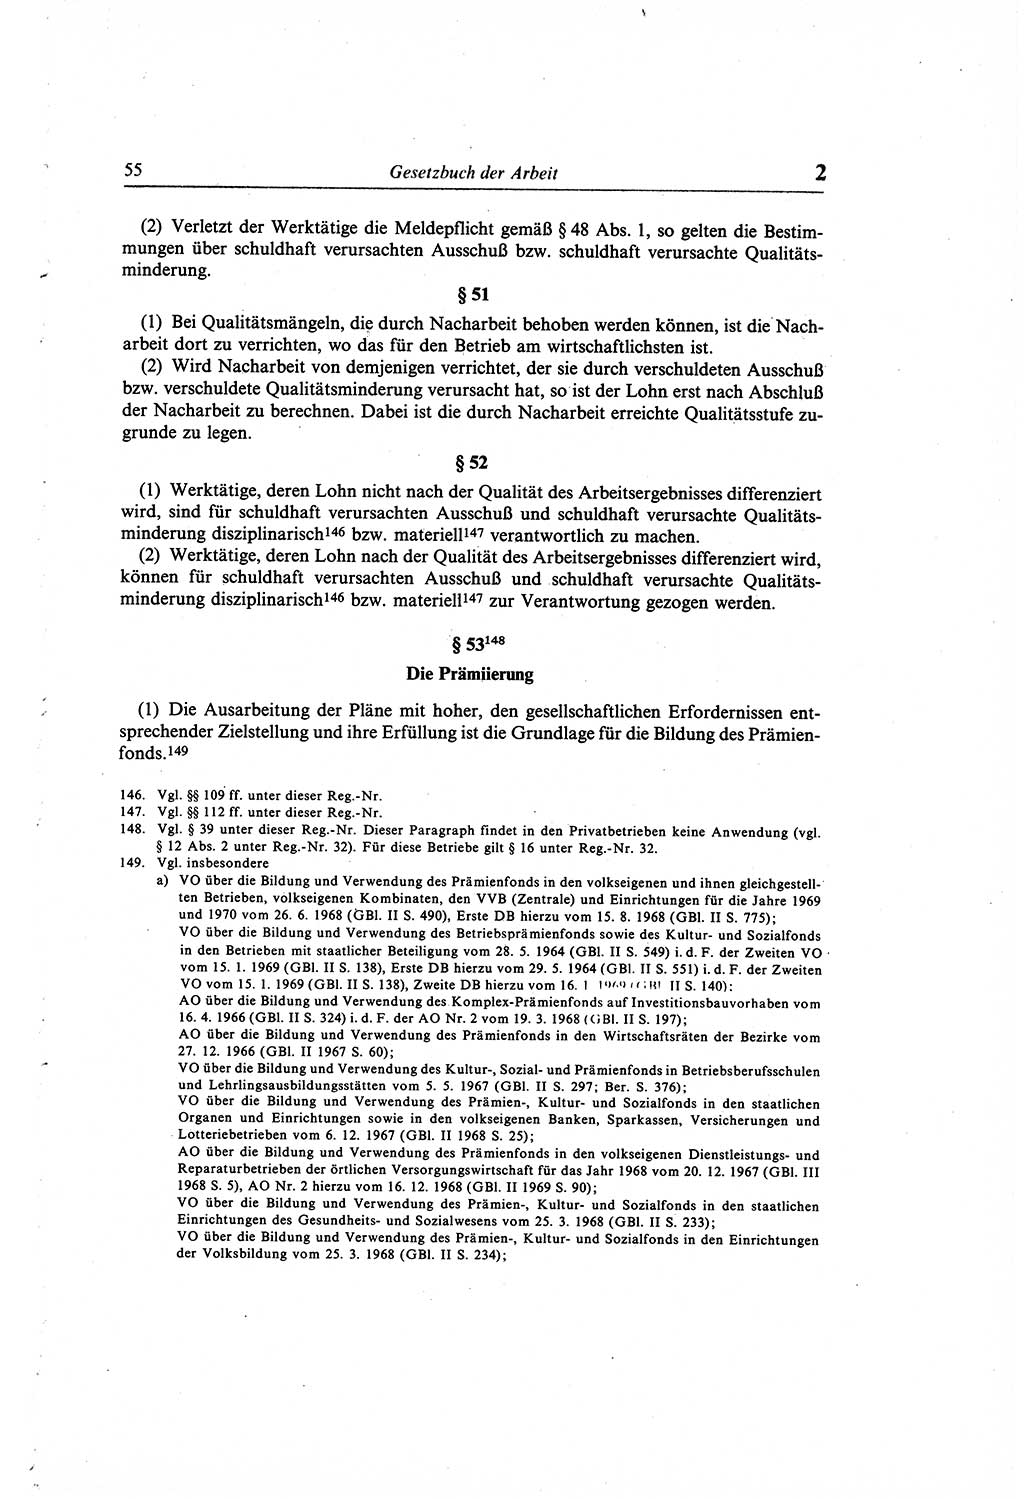 Gesetzbuch der Arbeit (GBA) und andere ausgewählte rechtliche Bestimmungen [Deutsche Demokratische Republik (DDR)] 1968, Seite 55 (GBA DDR 1968, S. 55)